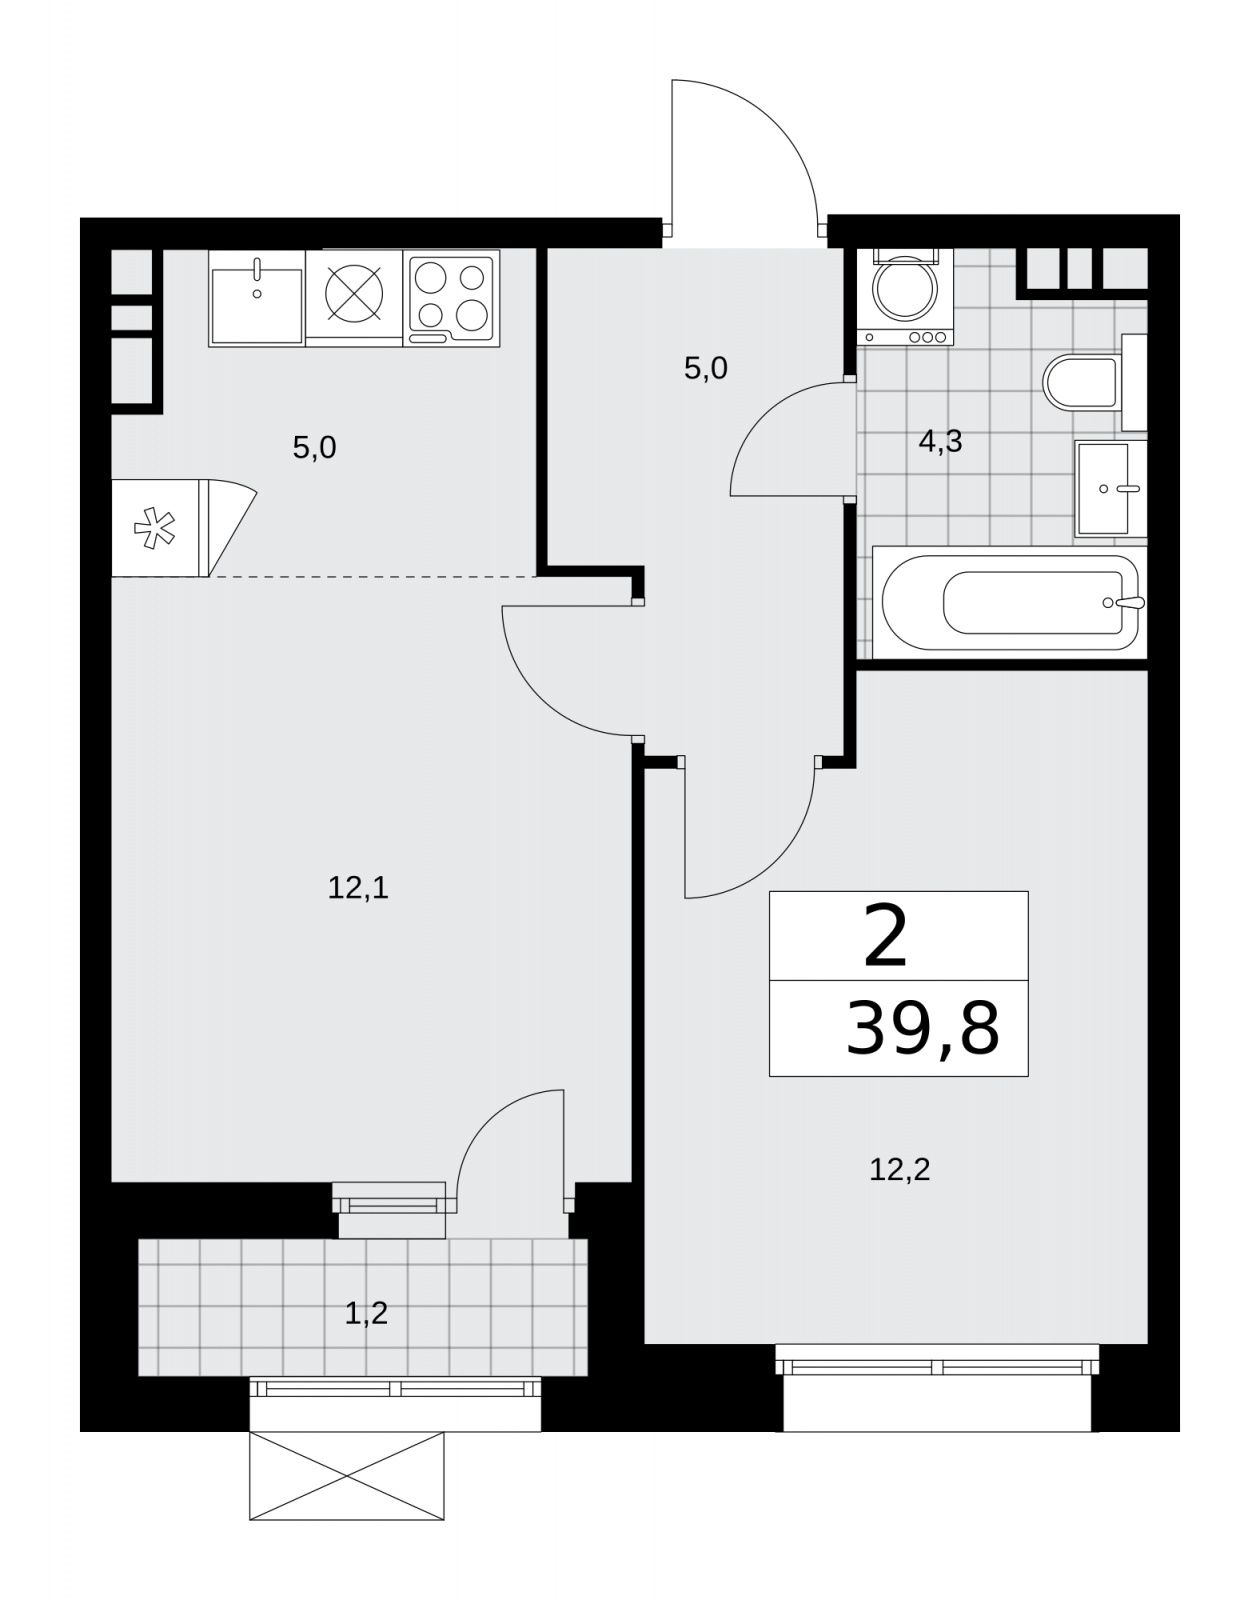 Продается просторная 2-комнатная квартира с европланировкой в новостройке, недалеко от метро